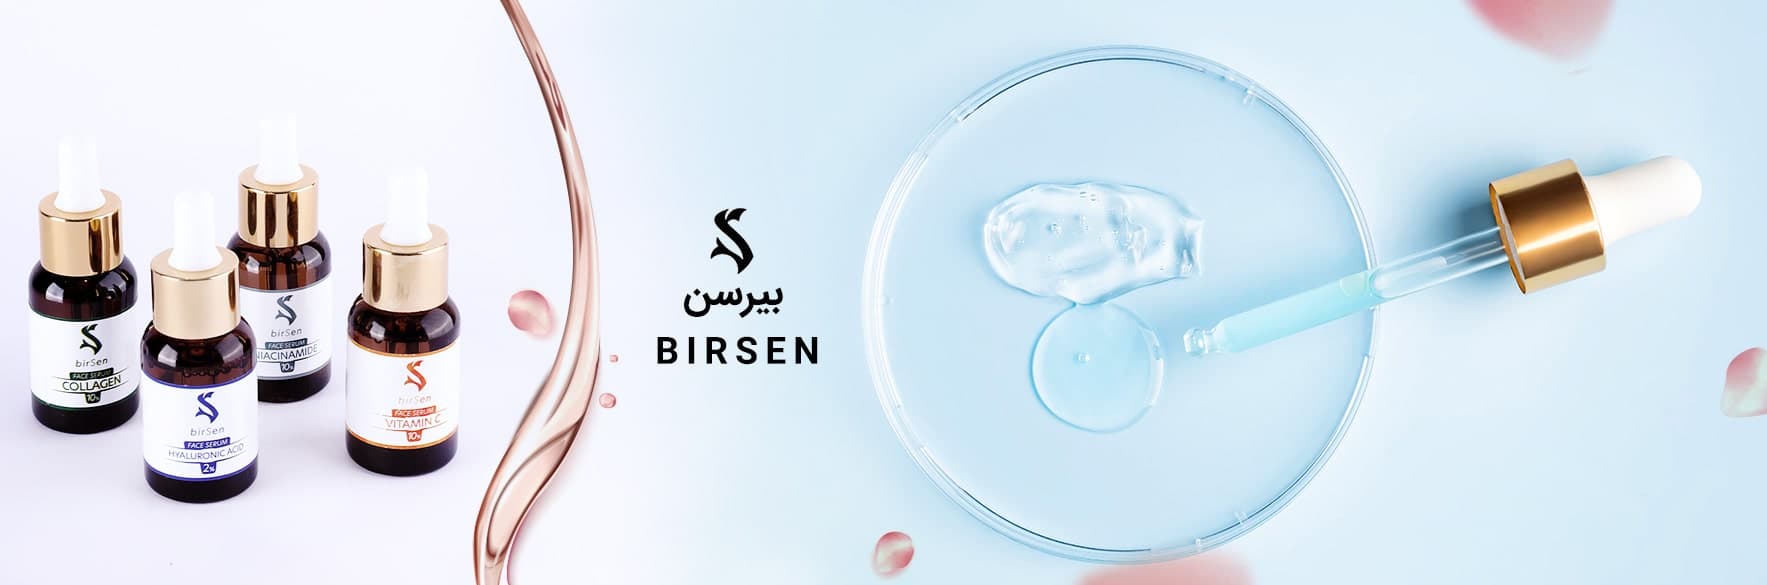 محصولات بیرسن BIRSEN برای محافظت از پوست صورت